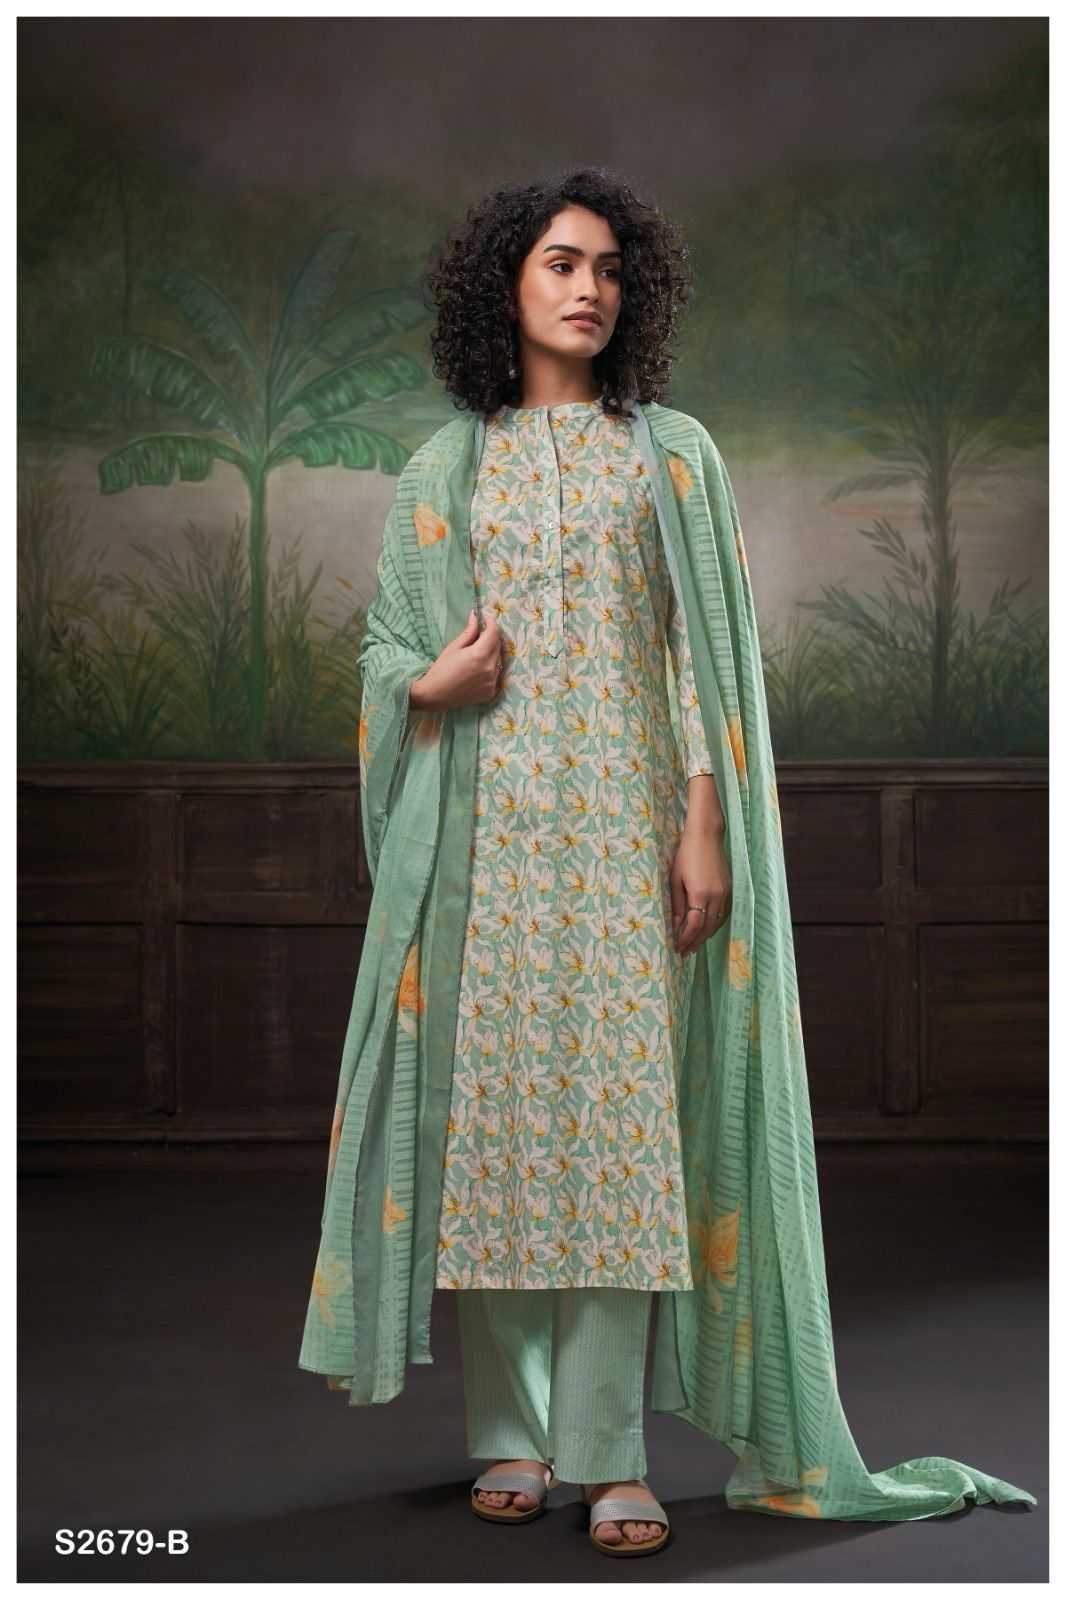 Ganga DITI 2679 Dress Materials Wholesale catalog